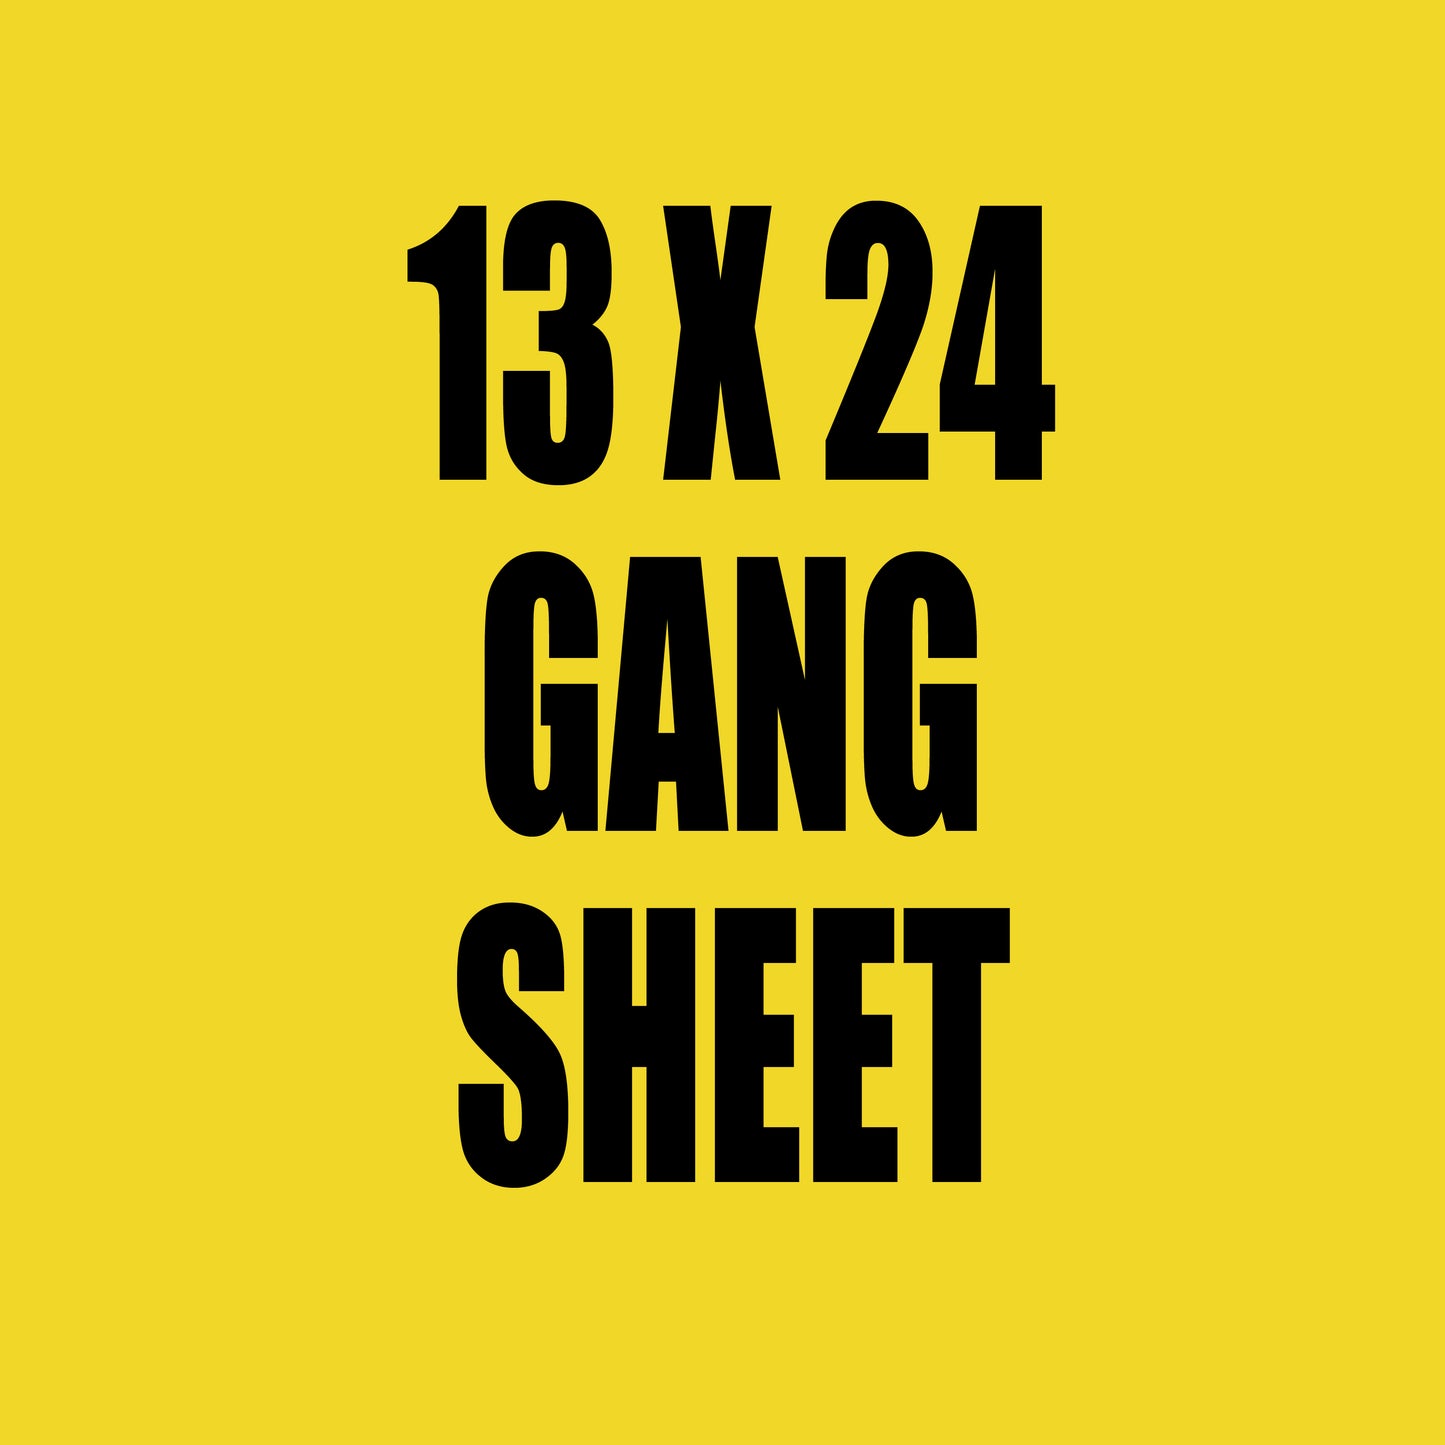 13x24 Gang Sheet